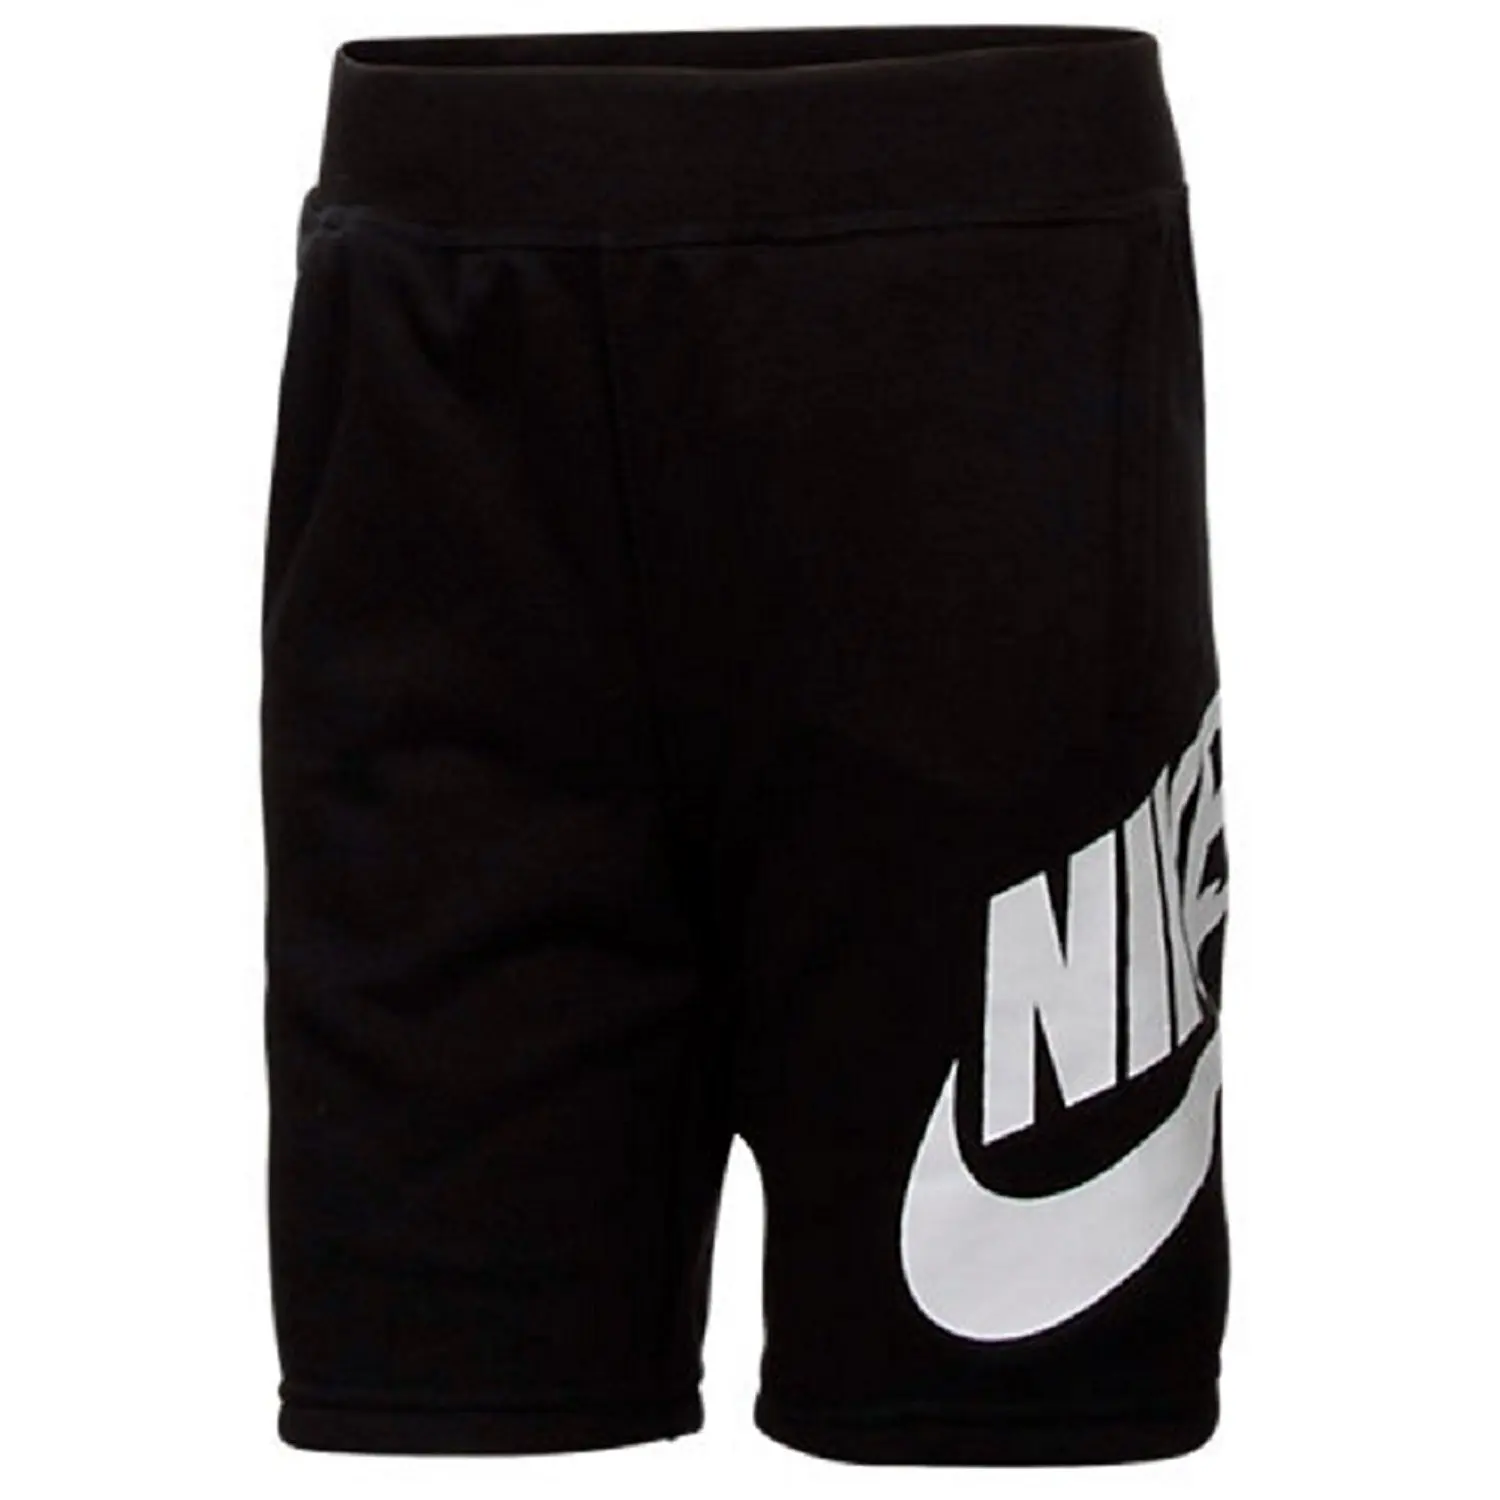 nike alumni shorts price